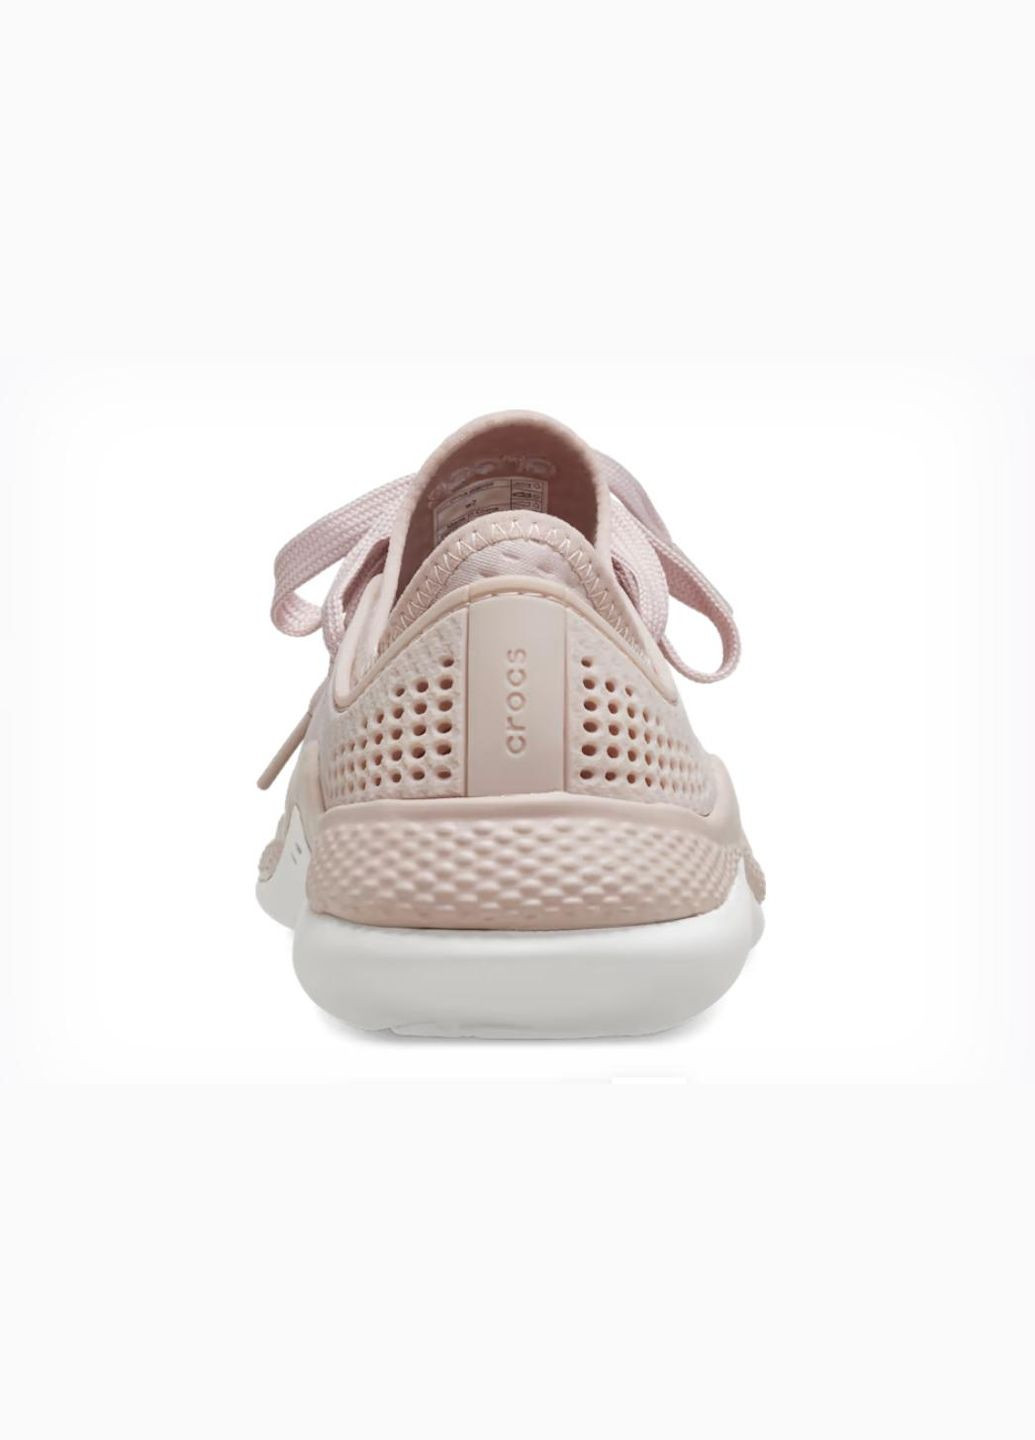 Бежеві всесезонні жіночі кросівки literide 360 pacer pink clay whihe m5w7--24см 206715-w Crocs